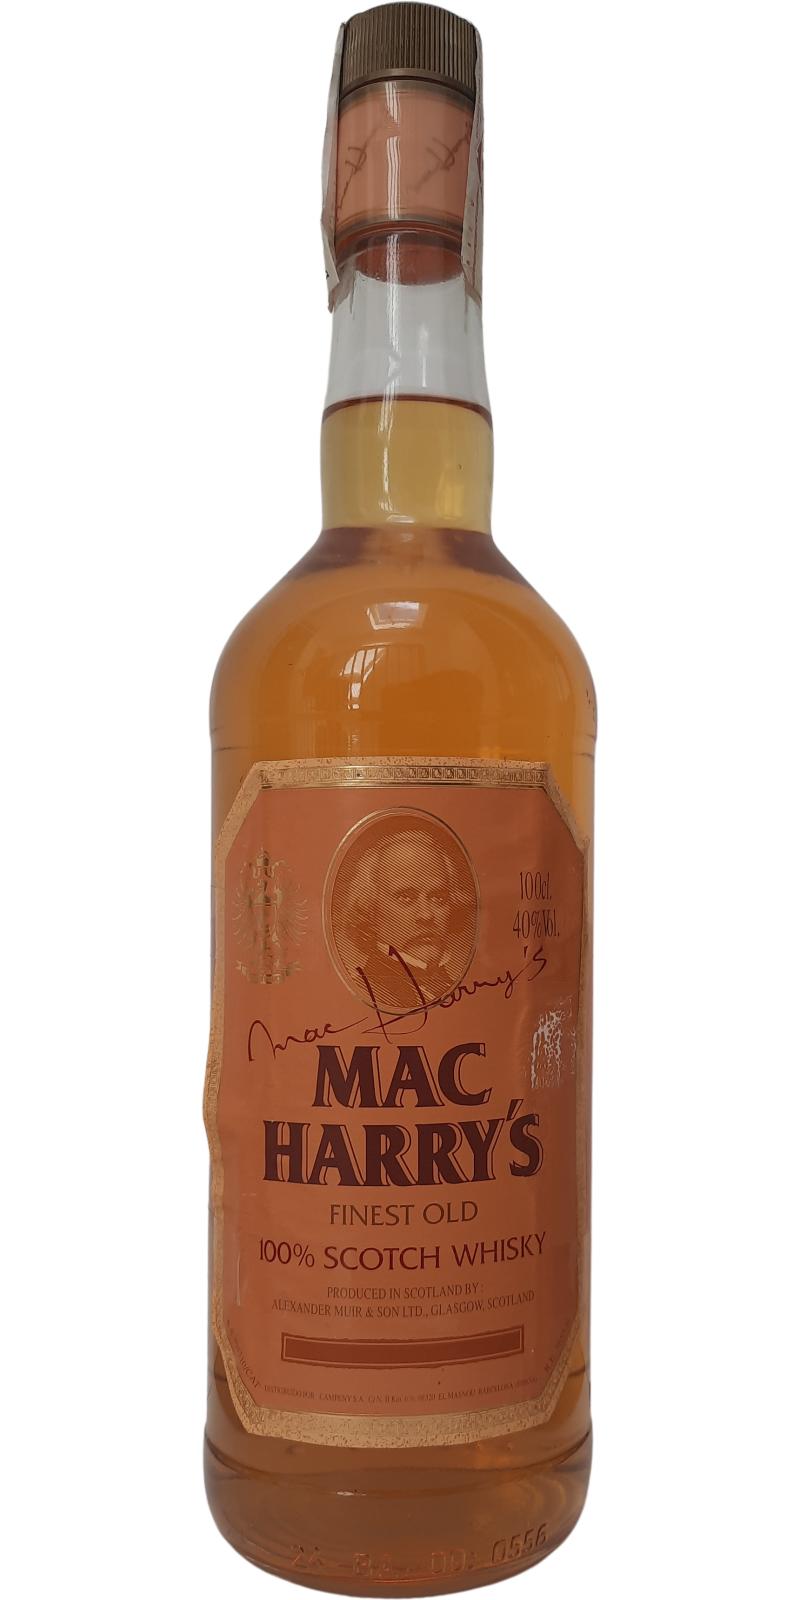 Mac Harry's Finest Old 100% Scotch Whisky 40% 1000ml